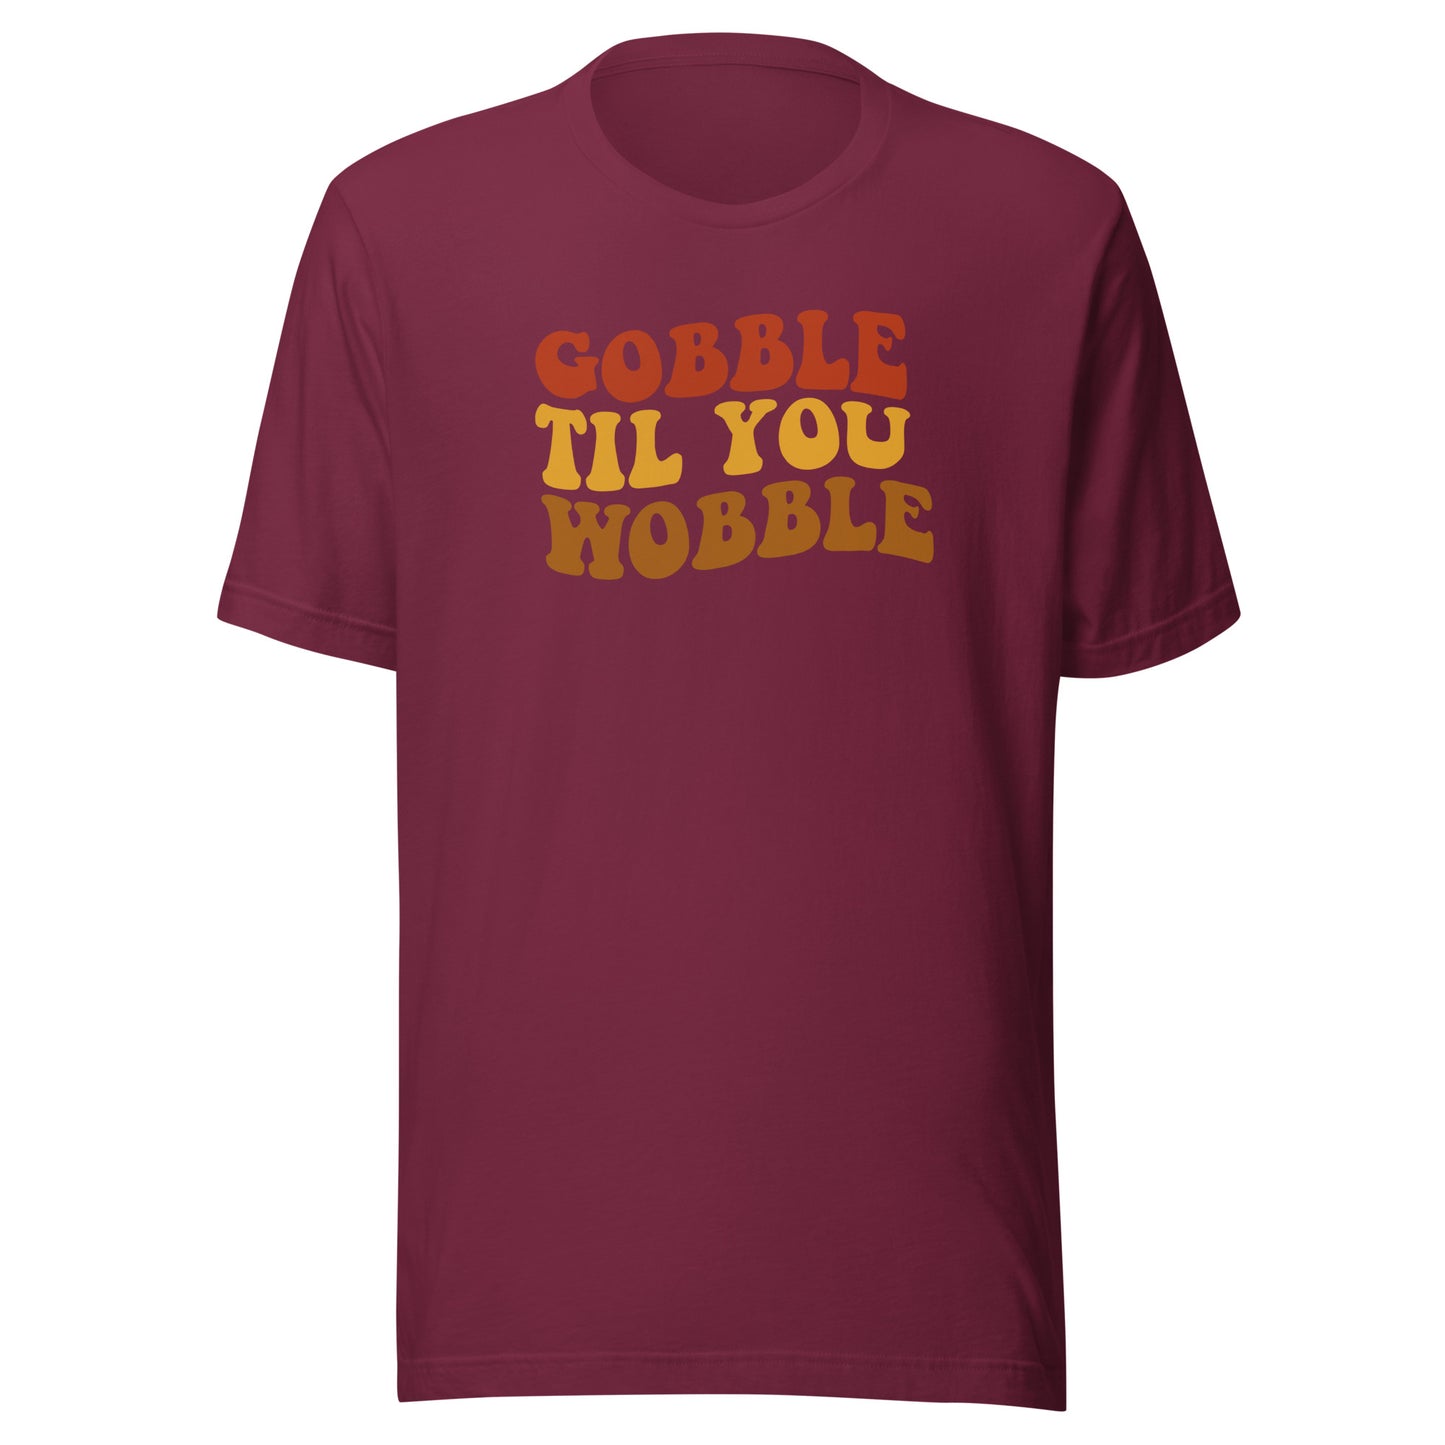 Gobble Til You Wobble Text T-Shirt